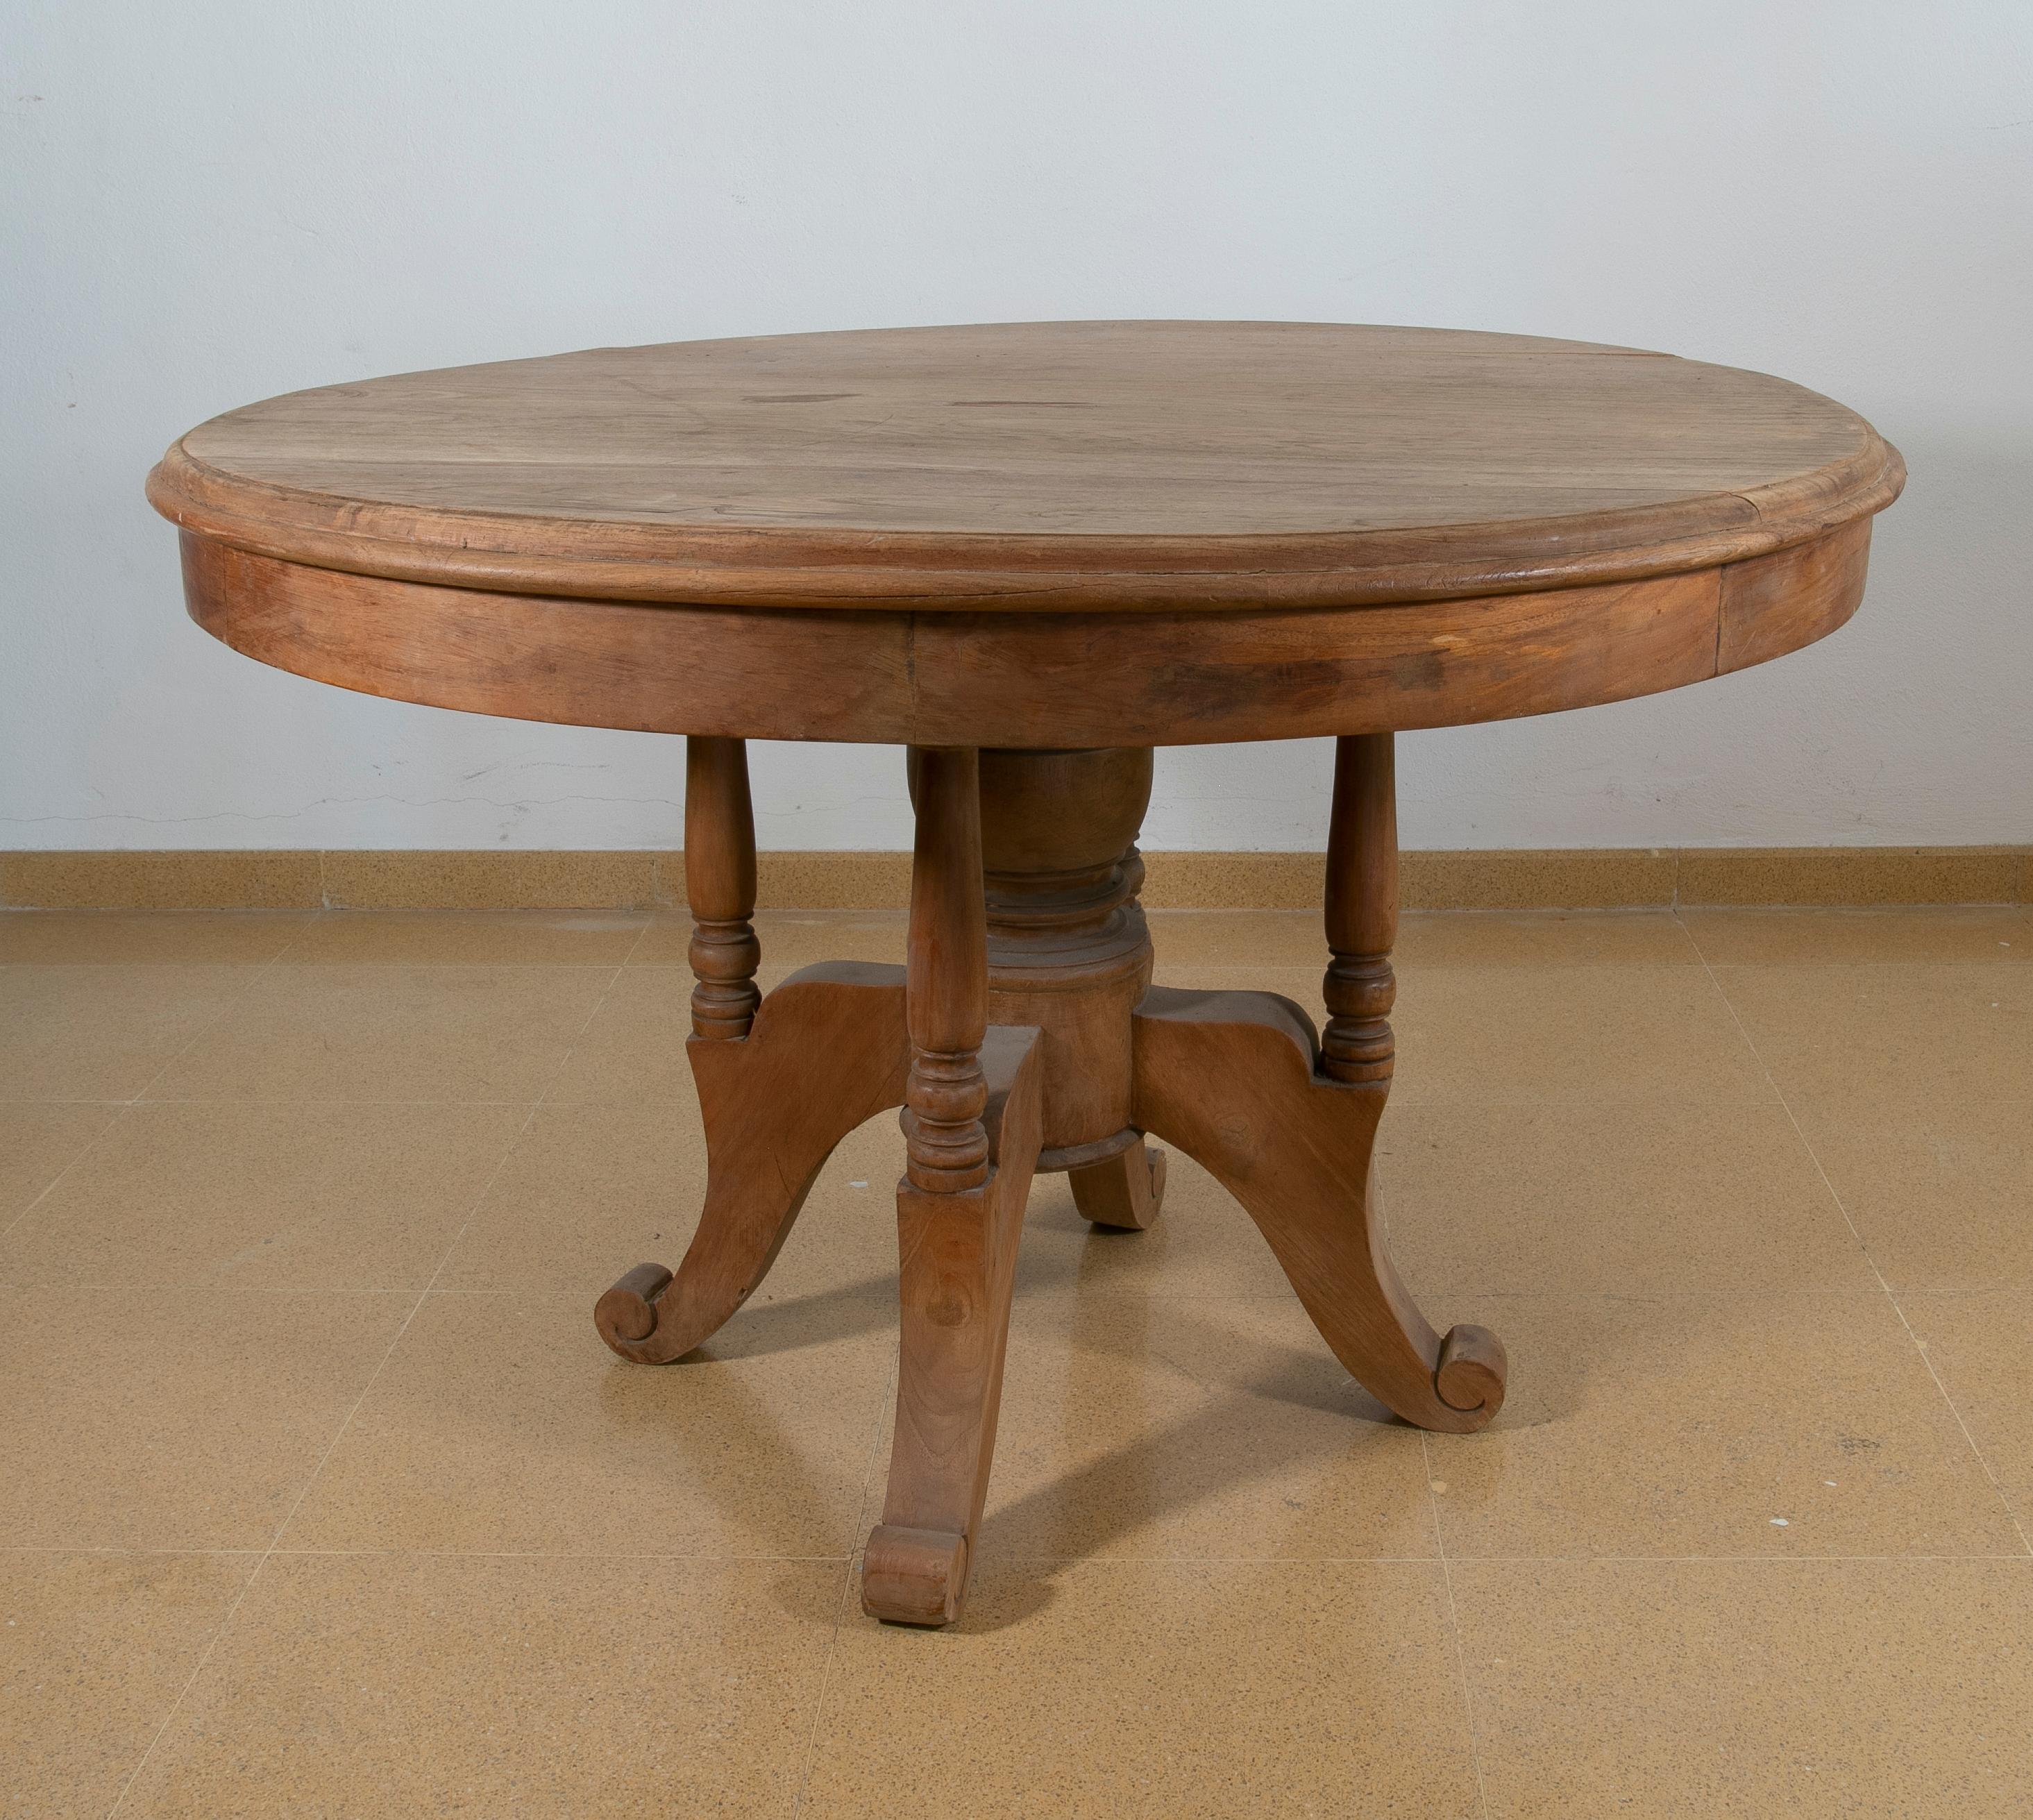 Table ronde espagnole en bois dans la couleur d'origine avec des pieds tournés.